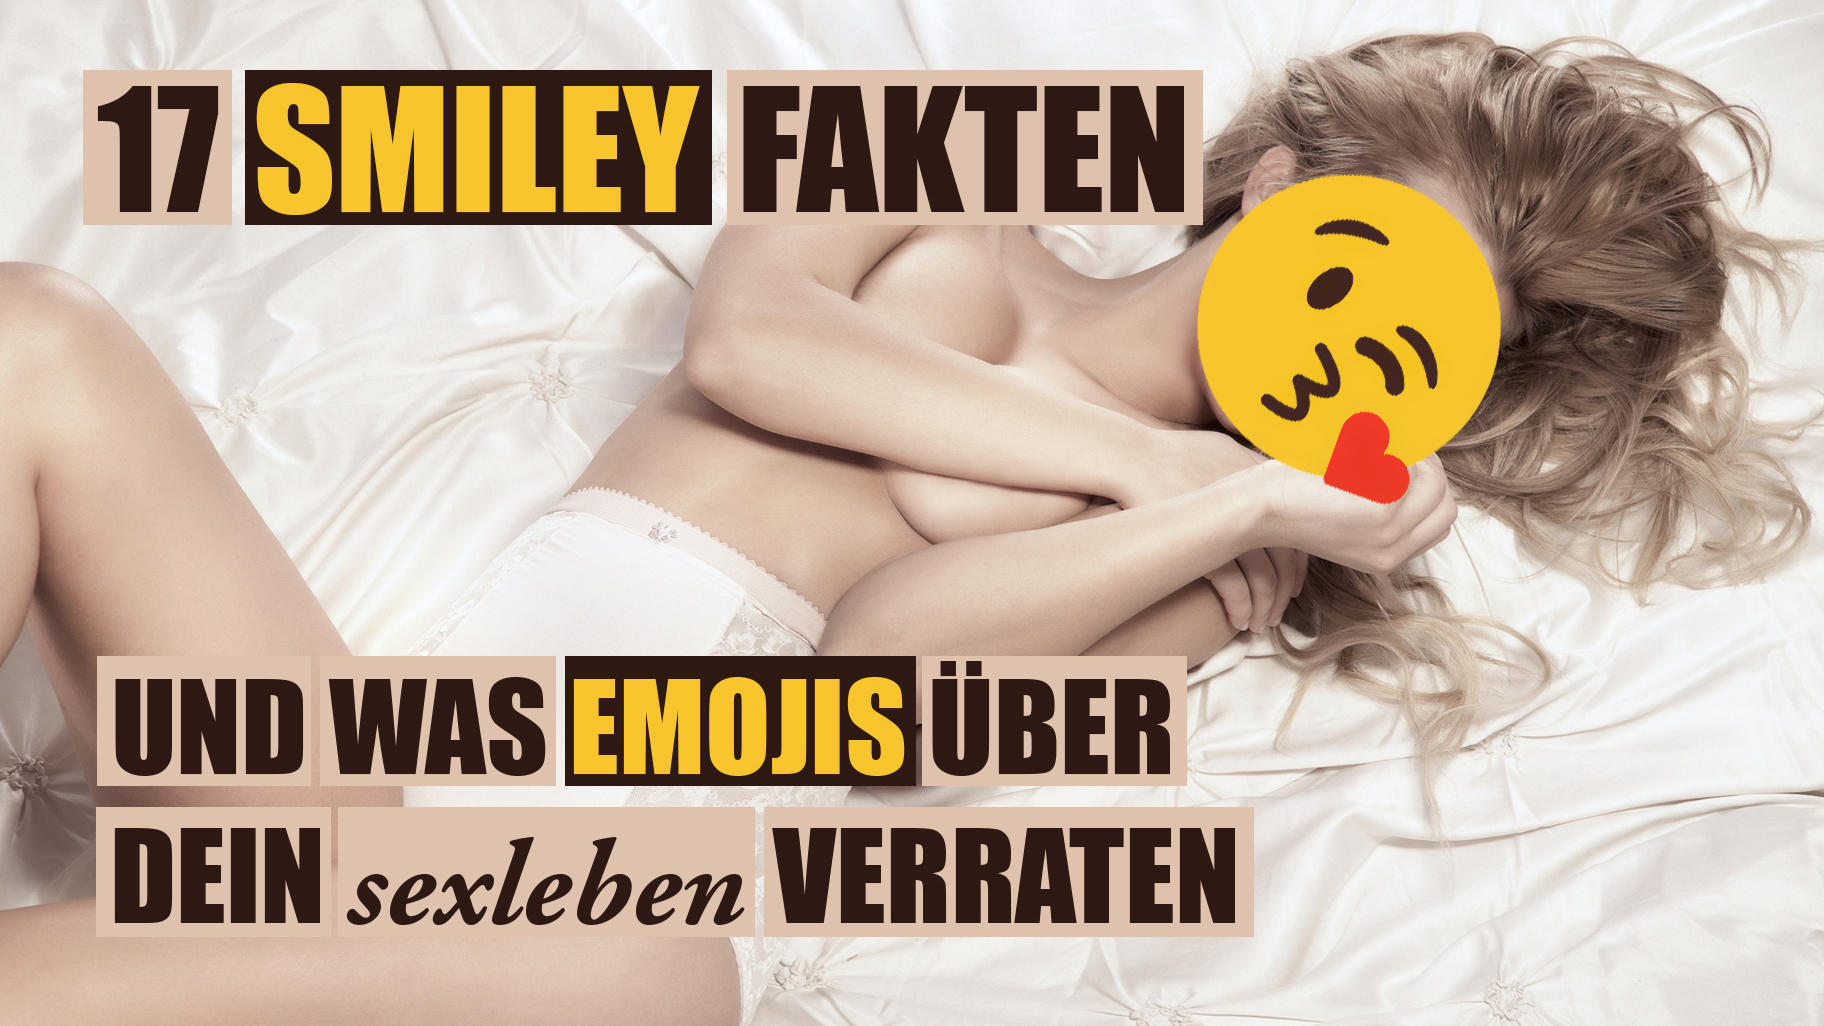 Was Emojis über unser Sexleben verraten Männer und Frauen zwinkern unterschiedlich